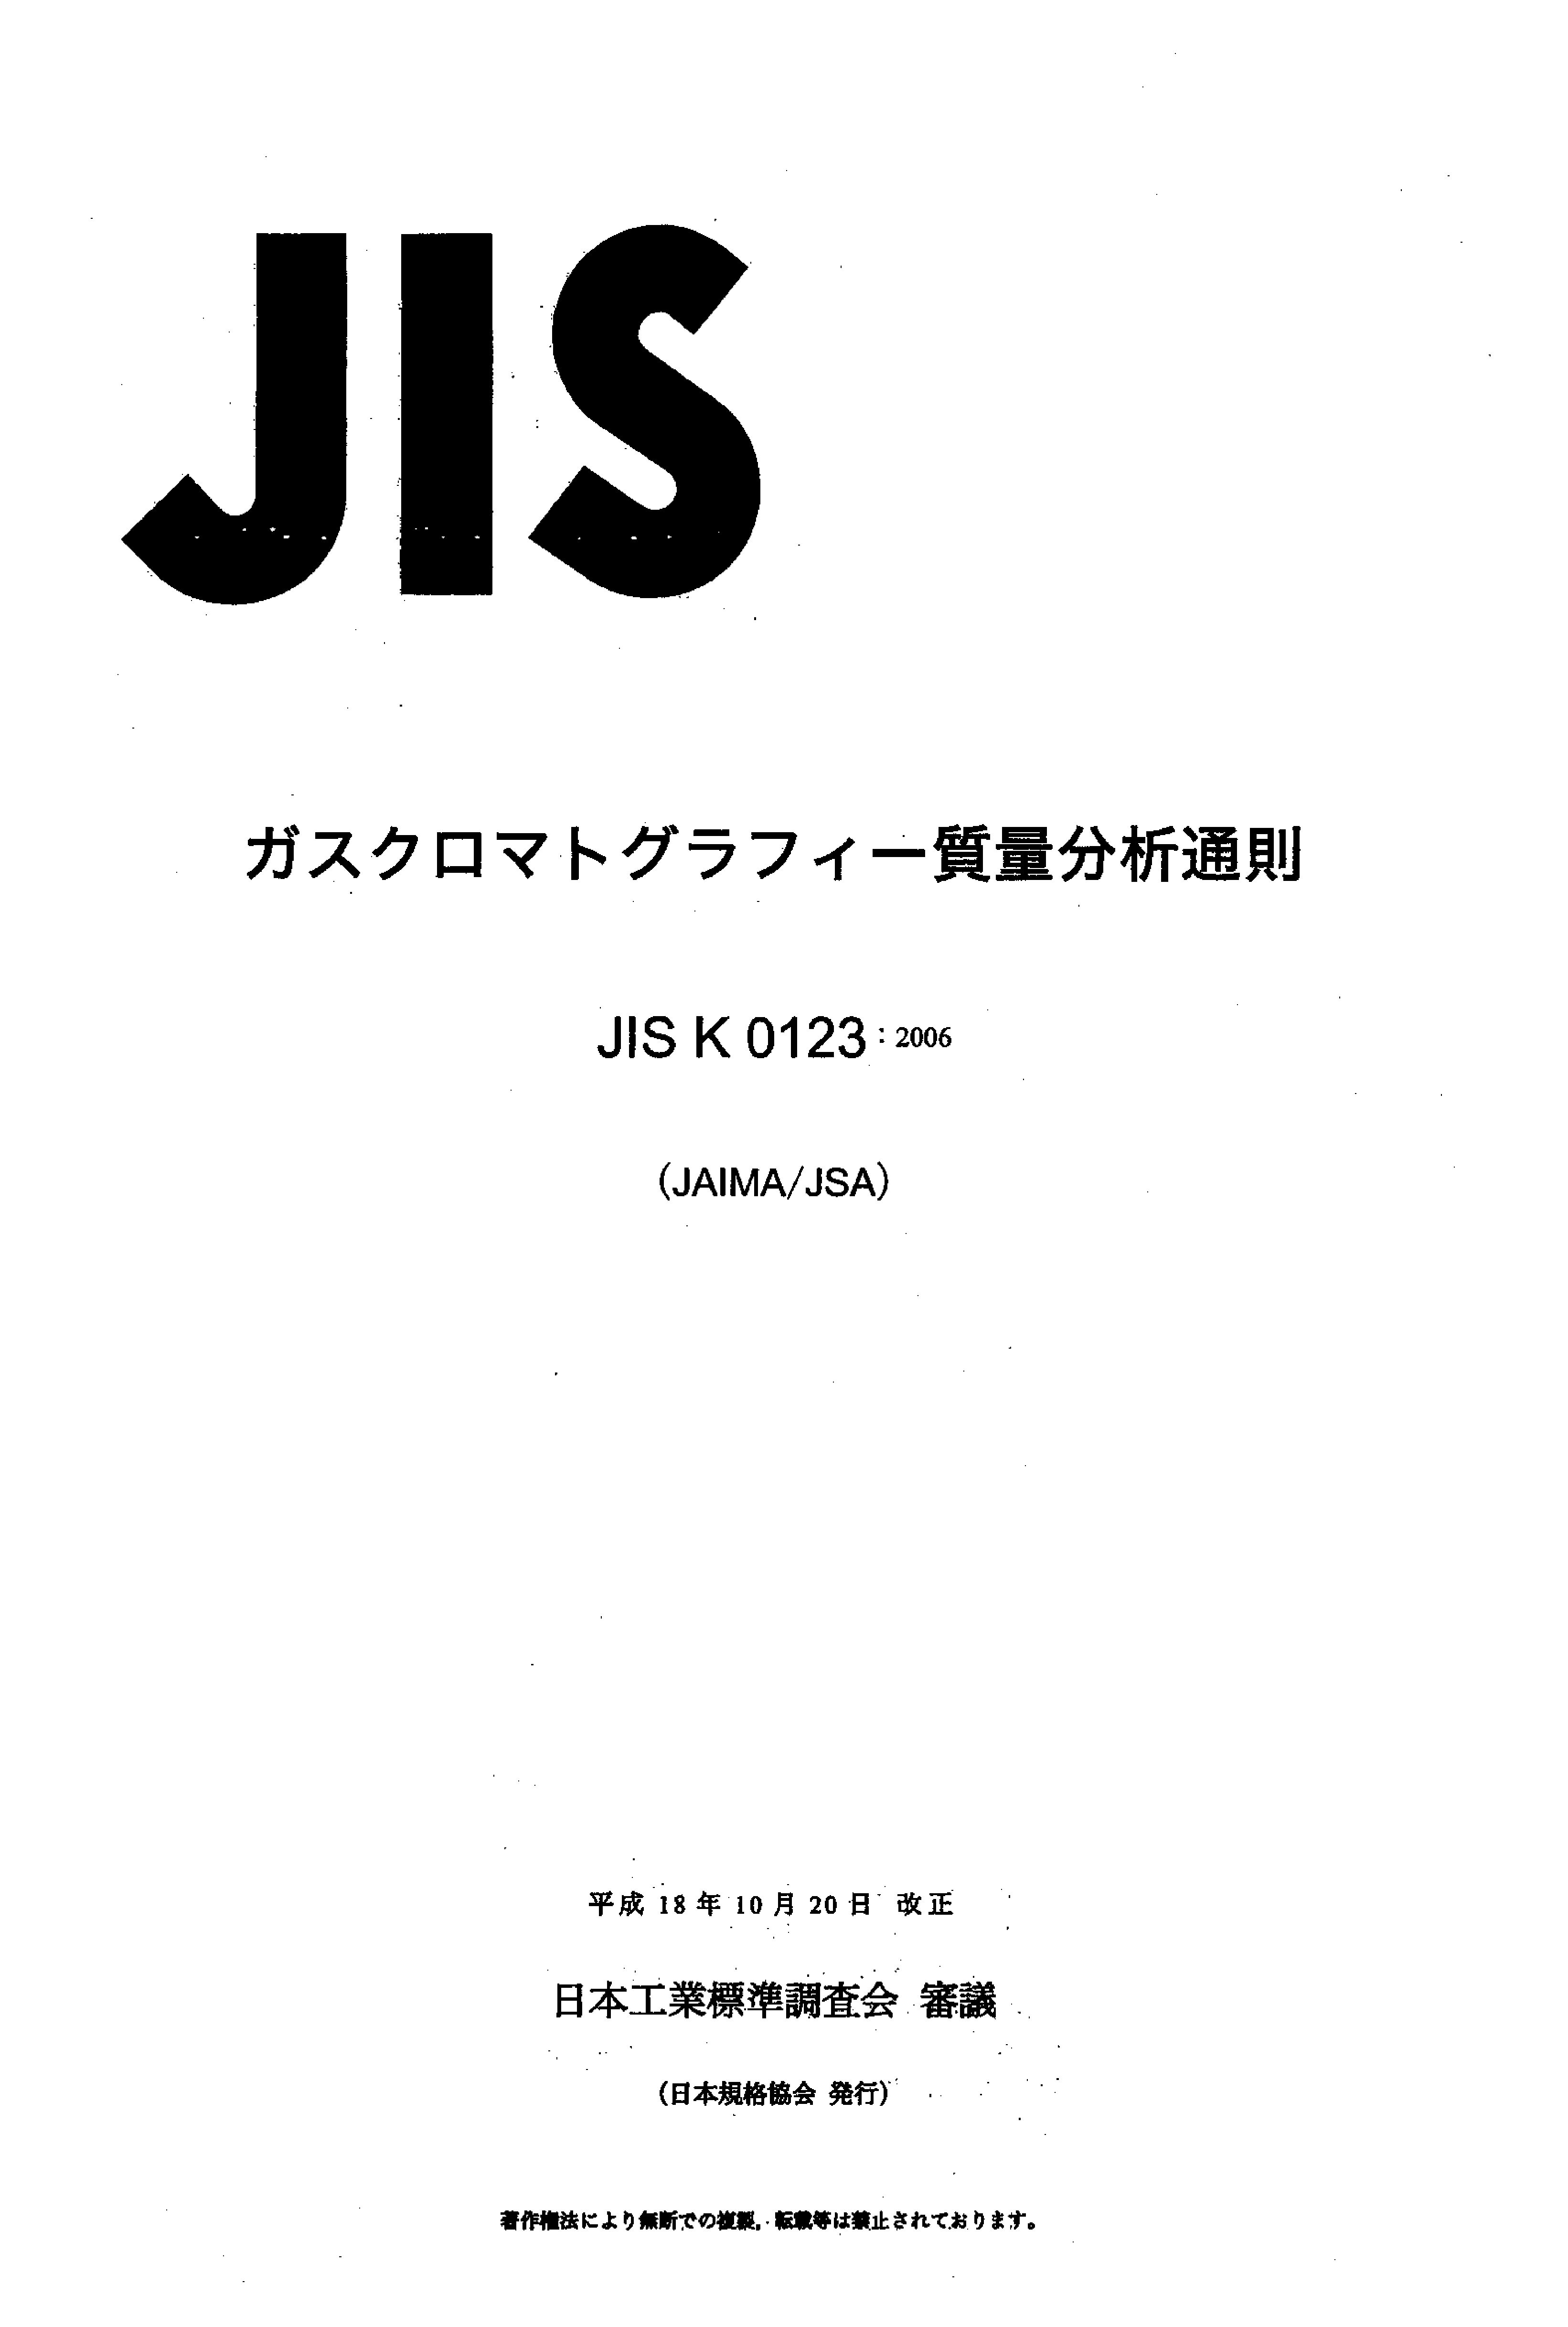 JIS K 0123:2006封面图